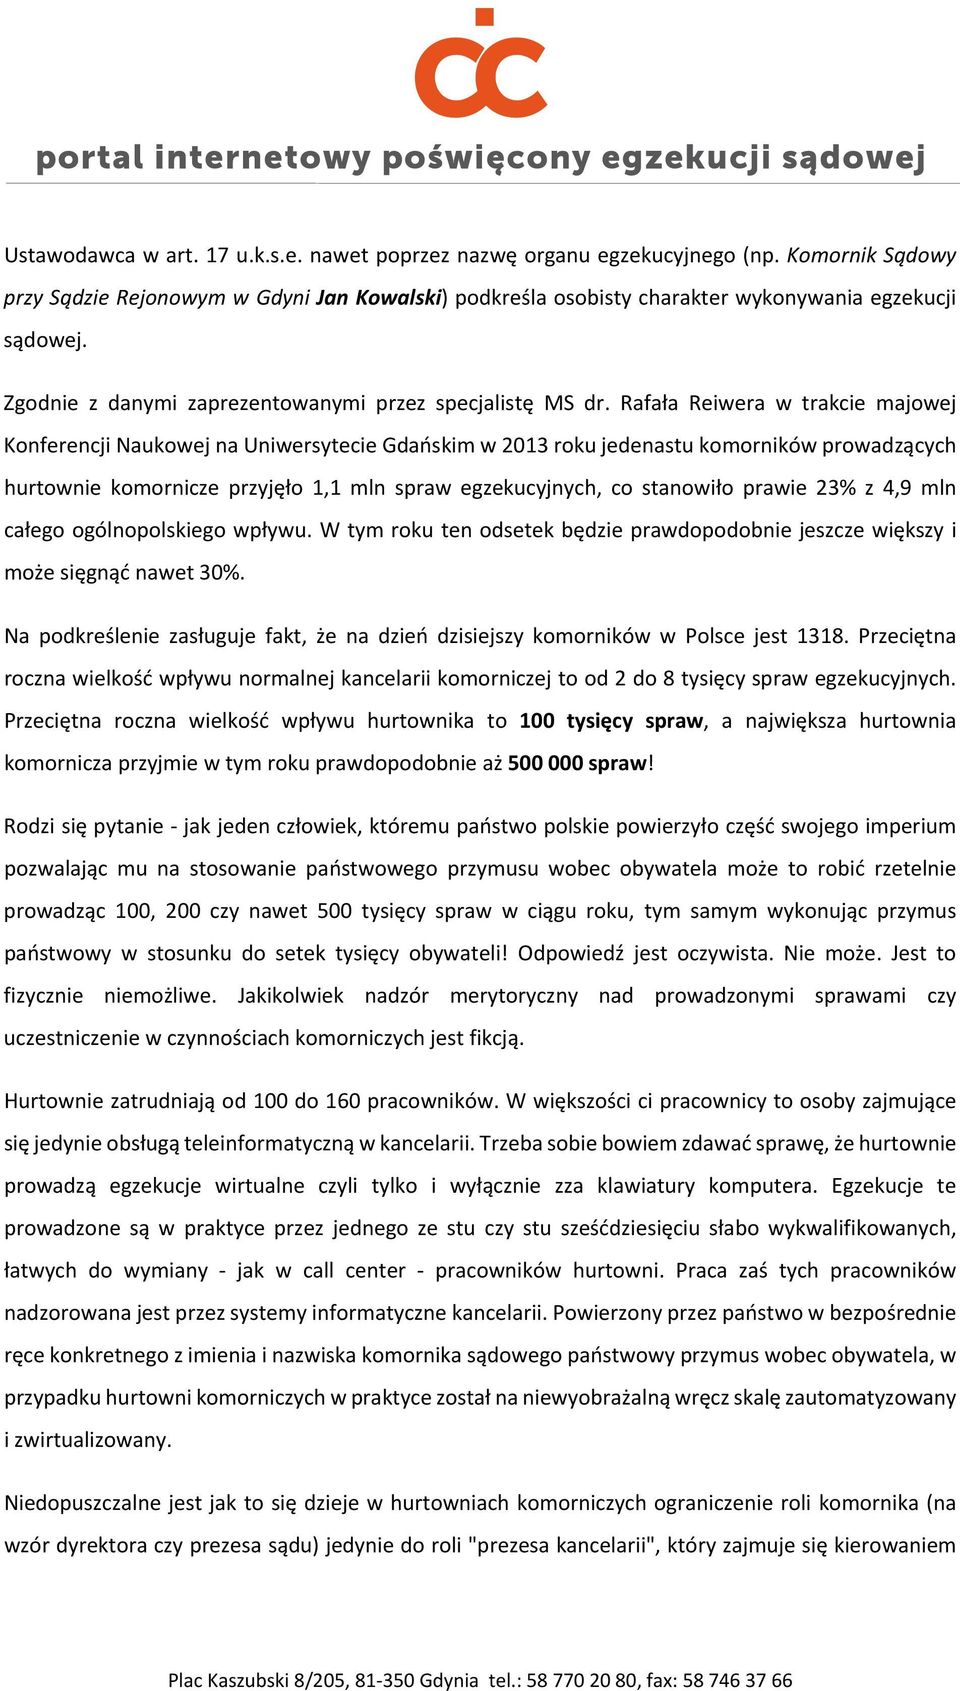 Rafała Reiwera w trakcie majowej Konferencji Naukowej na Uniwersytecie Gdańskim w 2013 roku jedenastu komorników prowadzących hurtownie komornicze przyjęło 1,1 mln spraw egzekucyjnych, co stanowiło